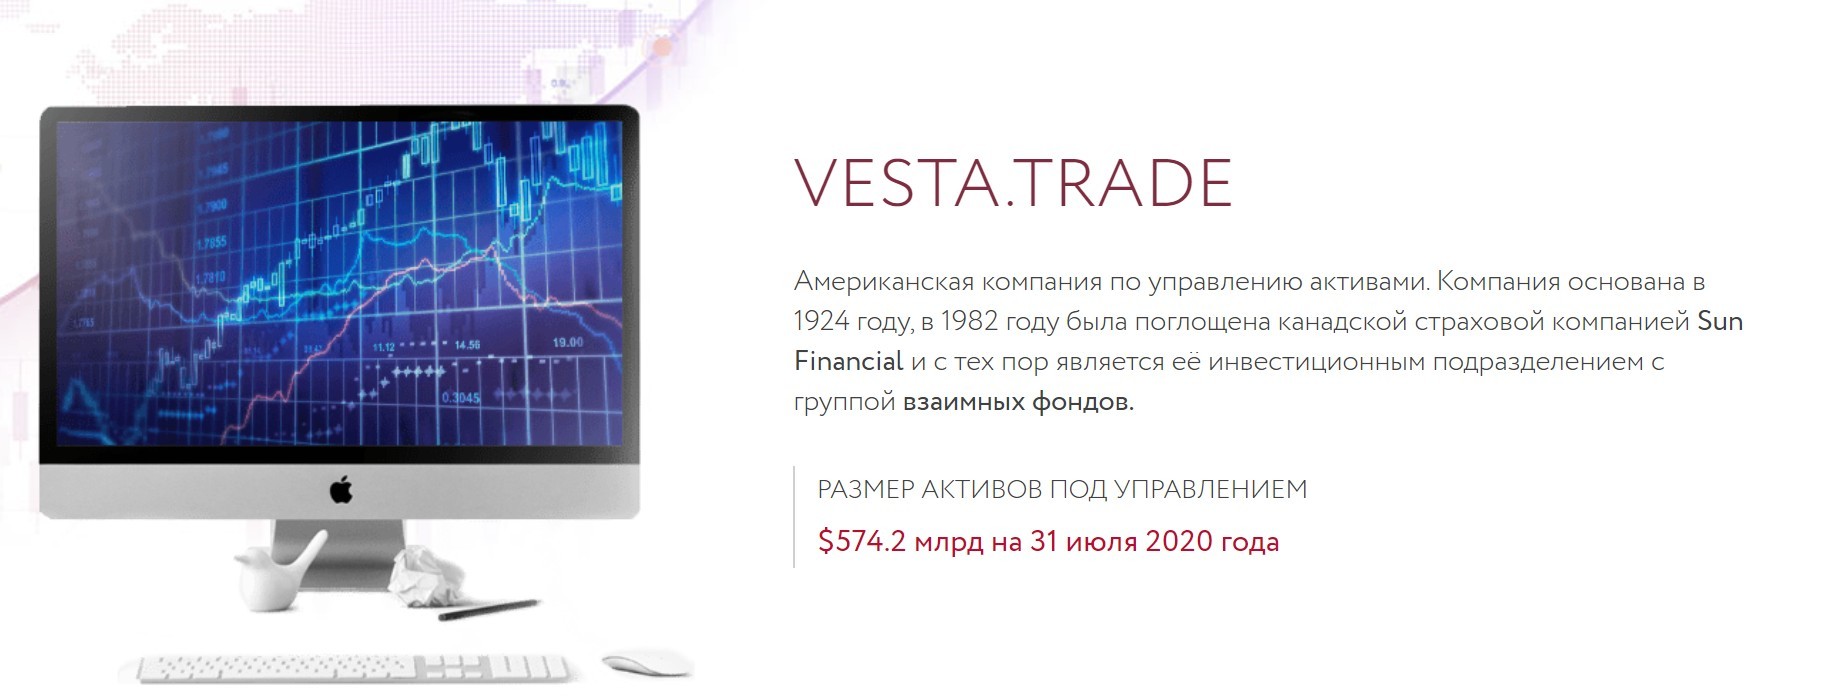 Обзор компании Vesta Trade